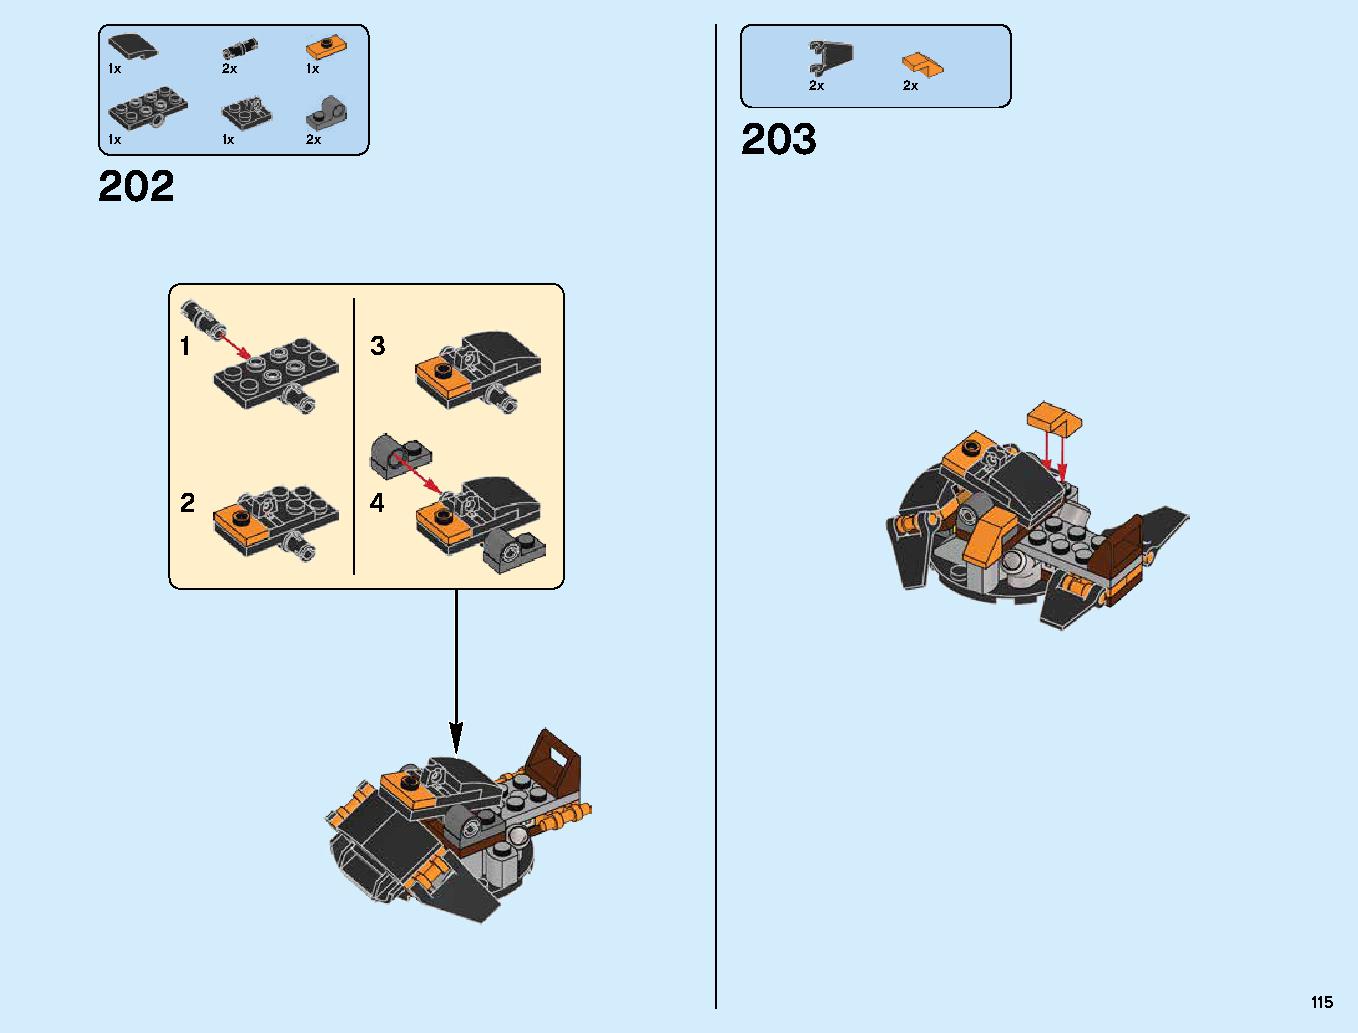 ハンティング・デスストライカー 70654 レゴの商品情報 レゴの説明書・組立方法 115 page